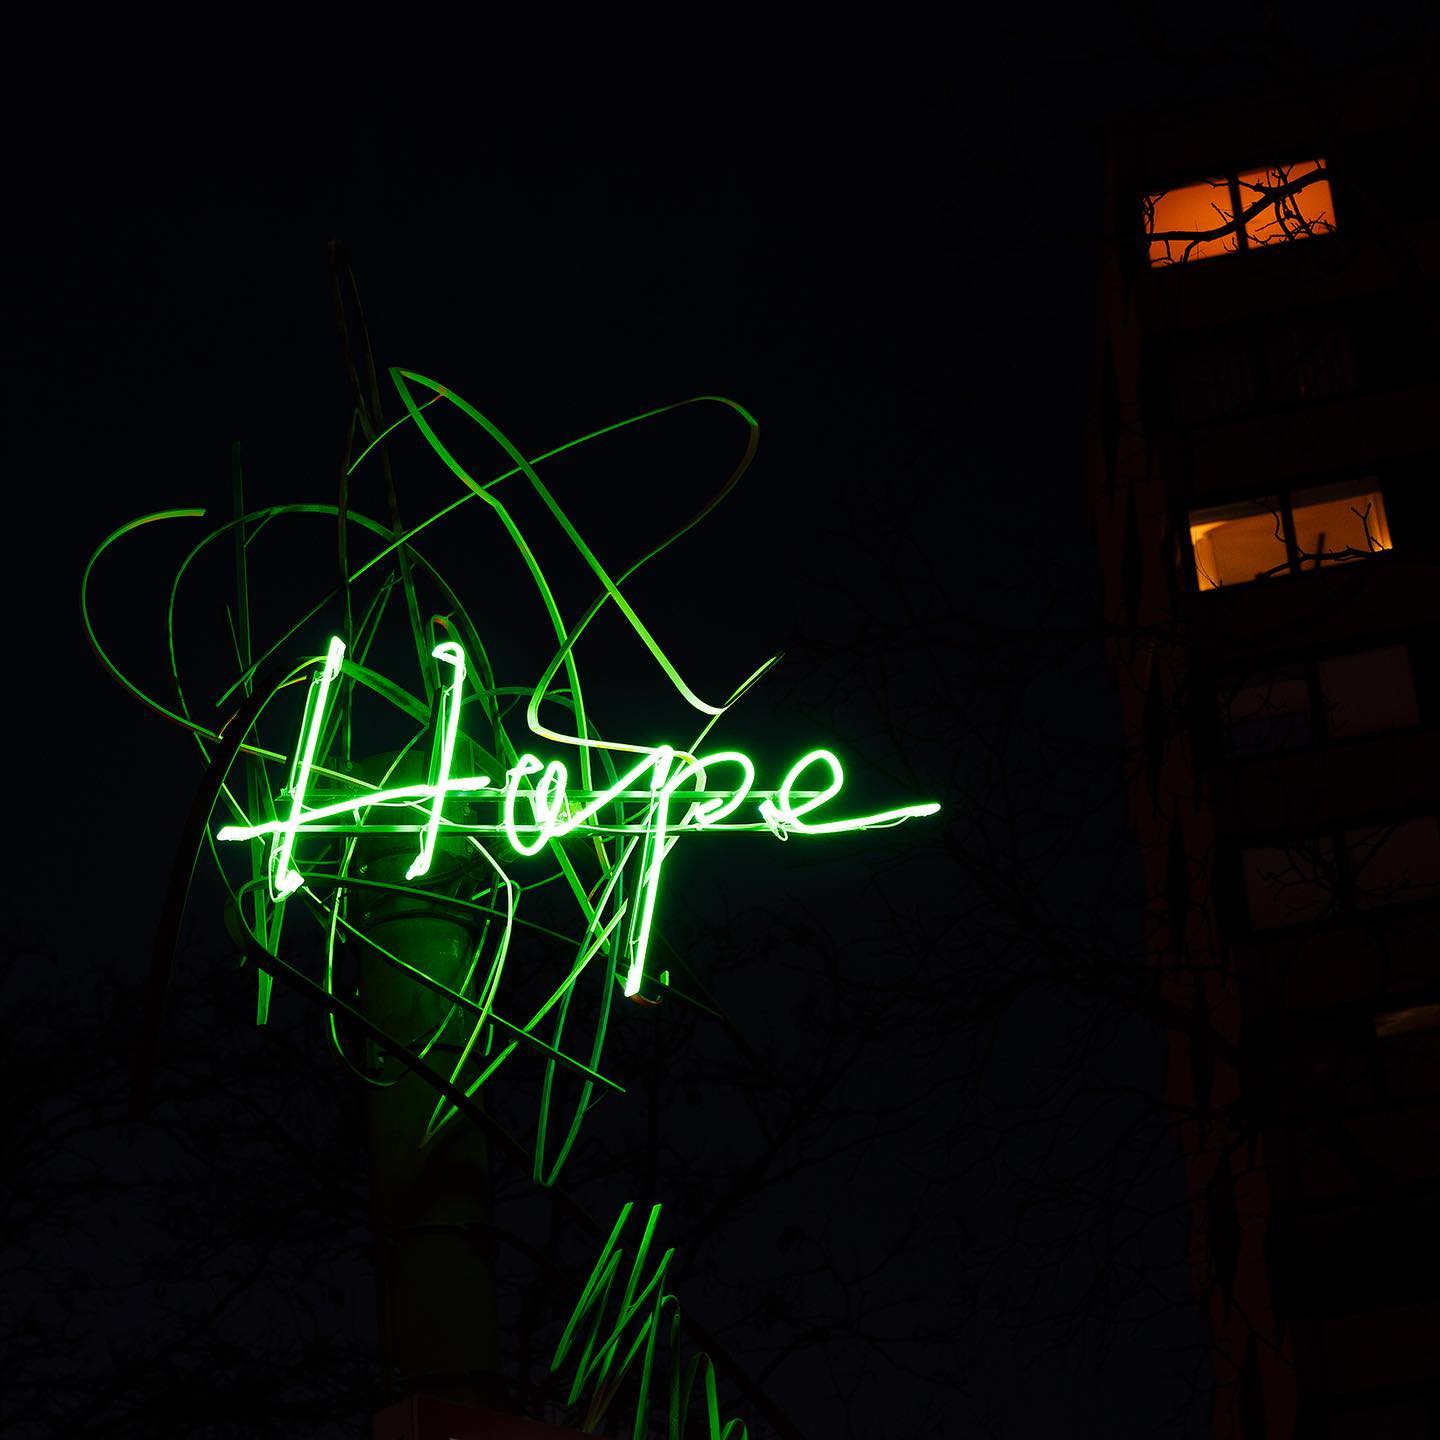 Grün ist die Hoffnung 
✖️✖️✖️✖️✖️✖️✖️
•Hope• von HA Schult 
………………………………..
#köln#haschult#kunst#artist#hope#hoffnung #glaube#green#rheinufer#liebedeinestadt #kunstwerk #neon#cgn#köllefornia #kölle#hoffnungstirbtzuletzt #grünistdiehoffnung #mediaart #lichtinstallation